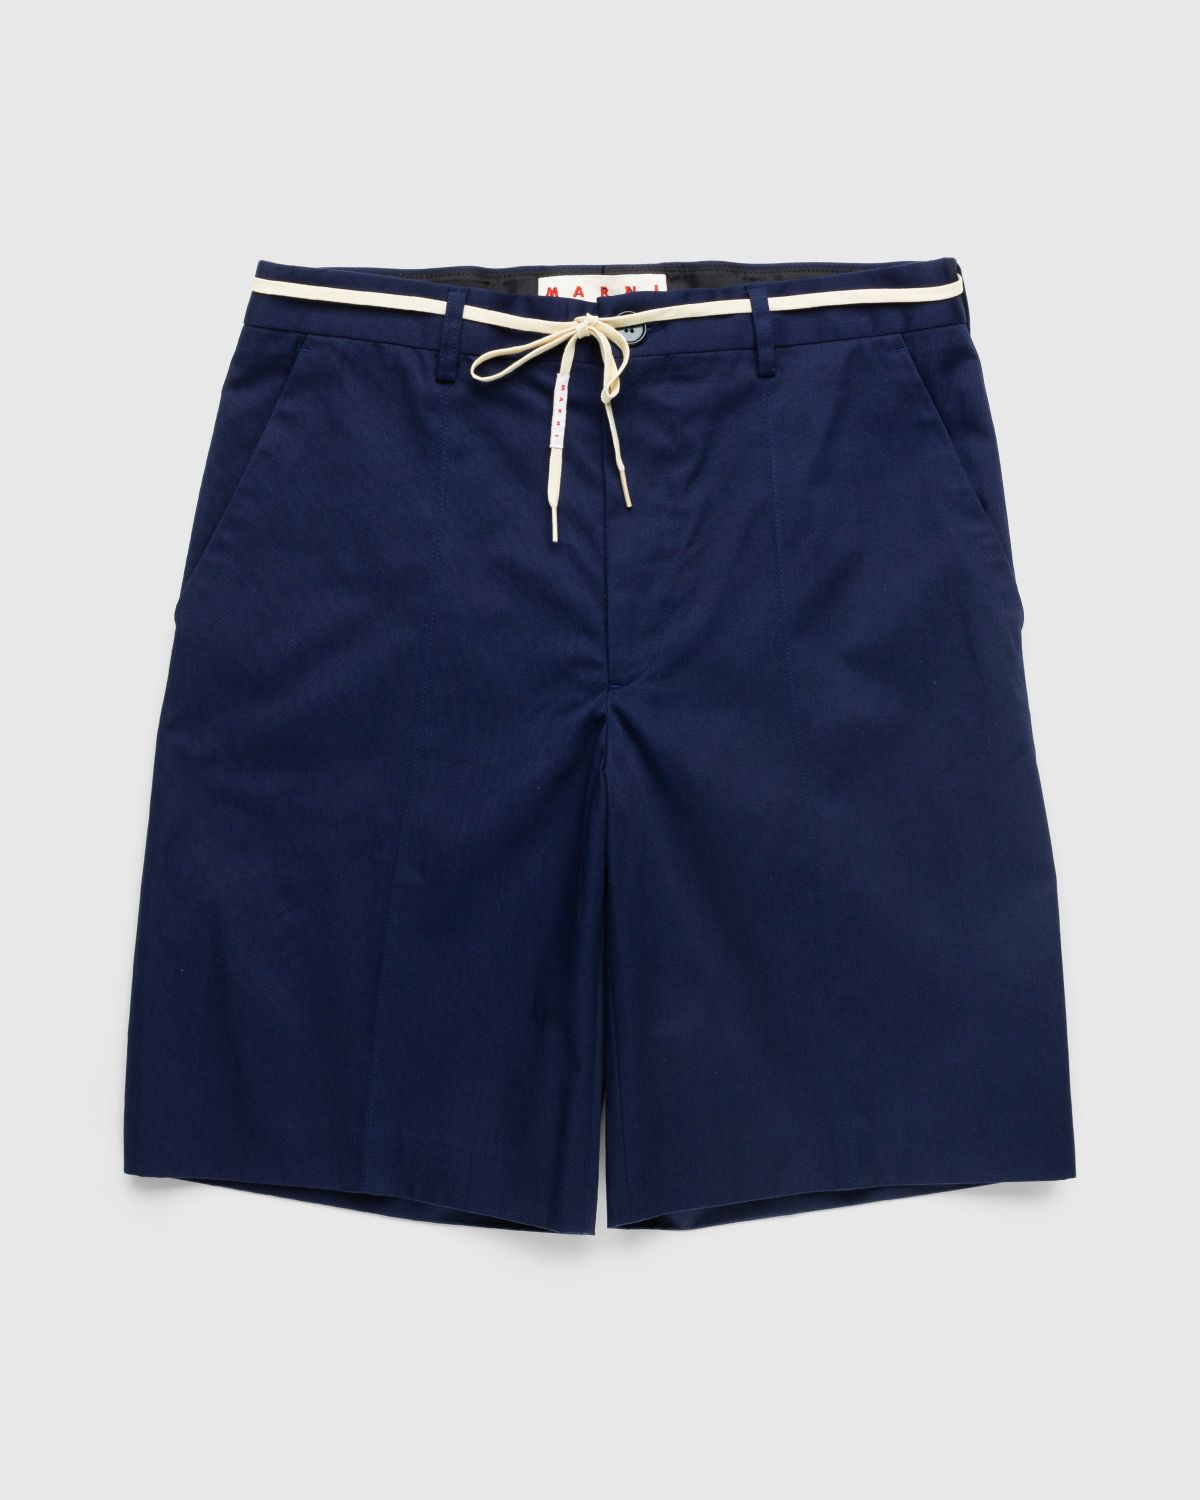 Marni – Drawstring Chino Shorts Ink Blue - Shorts - Blue - Image 1